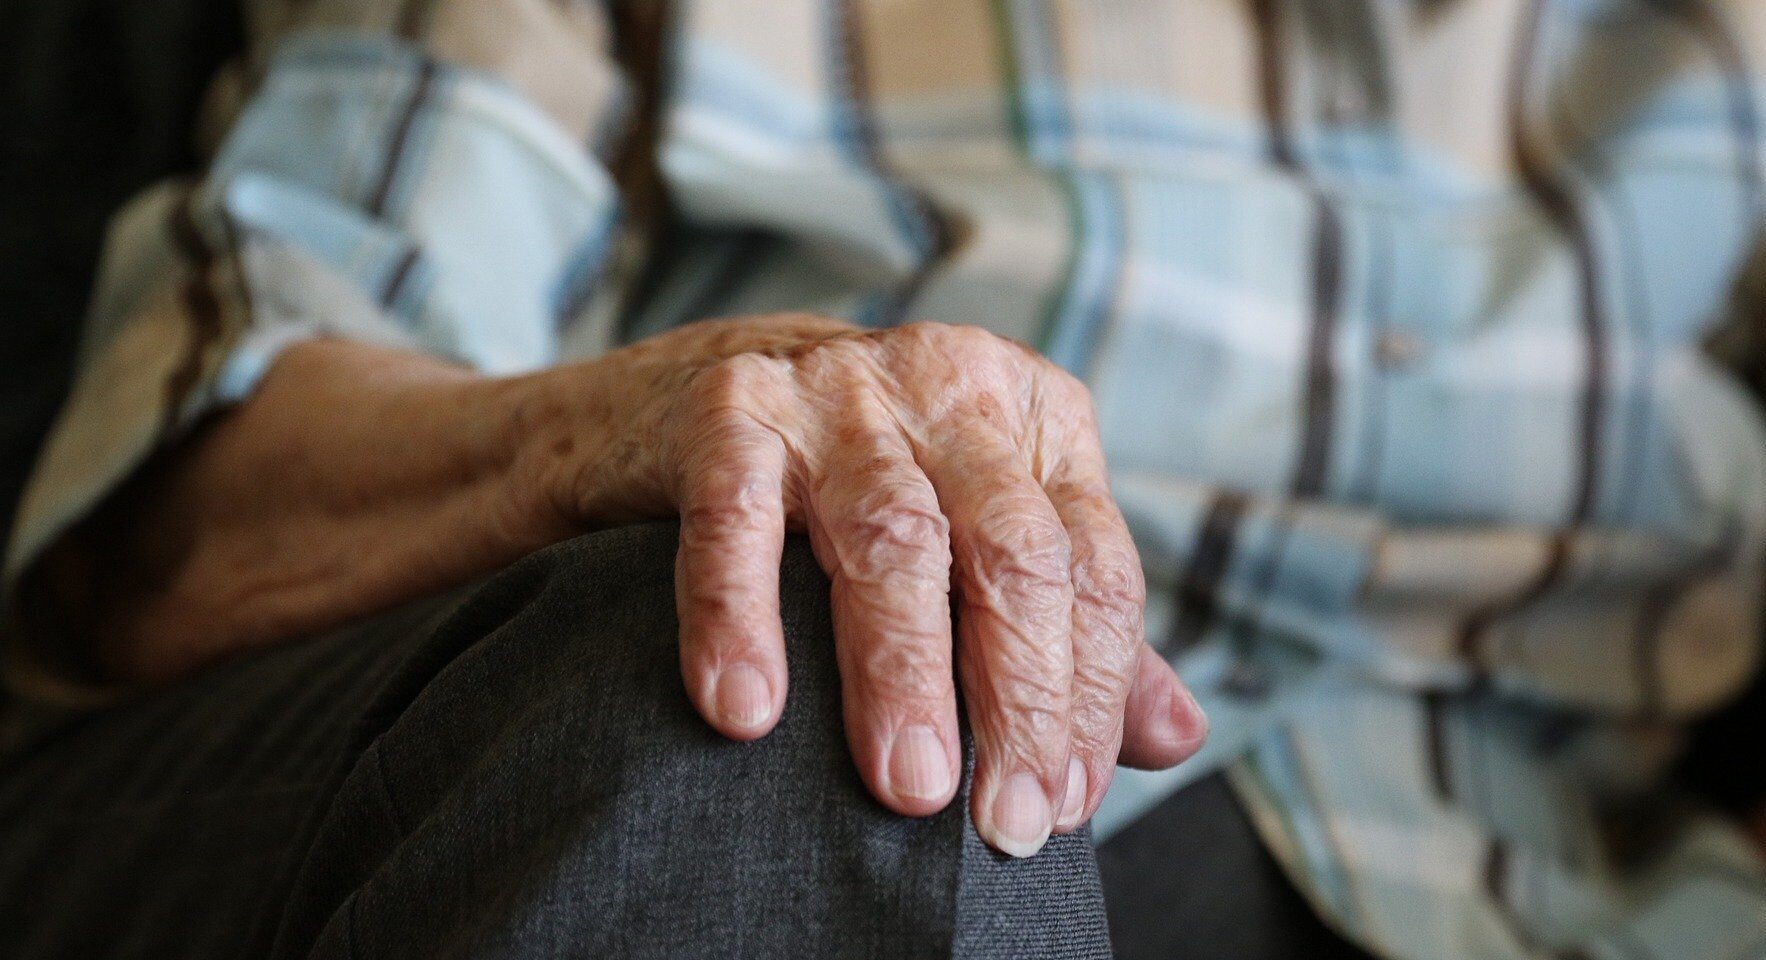 Через 3 месяца часть пенсионеров лишат выплат: в Минсоце сделали важное заявление